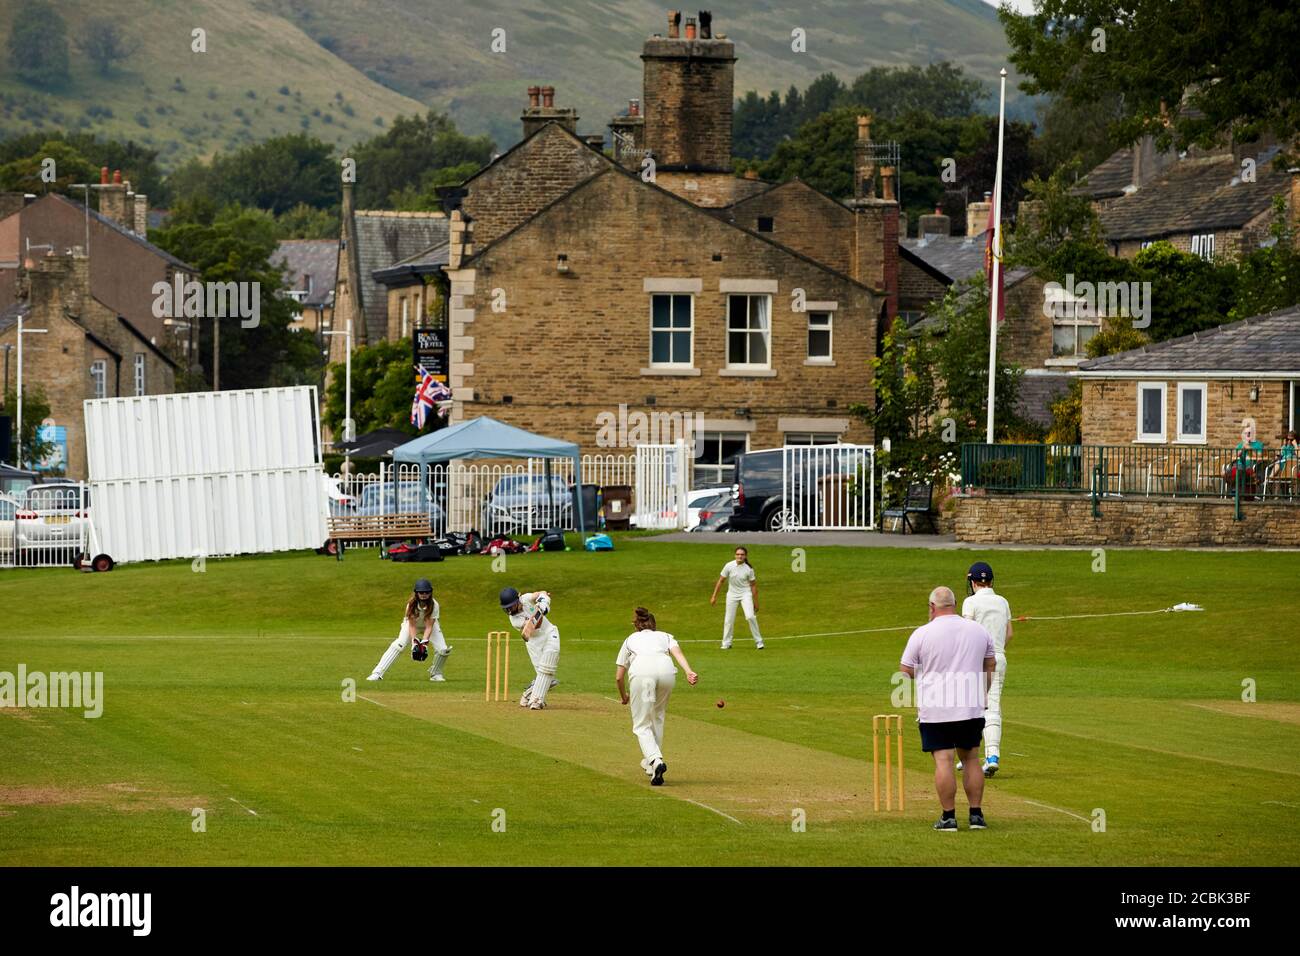 Hayfield village, High Peak, Derbyshire, village cricket ground Stock Photo